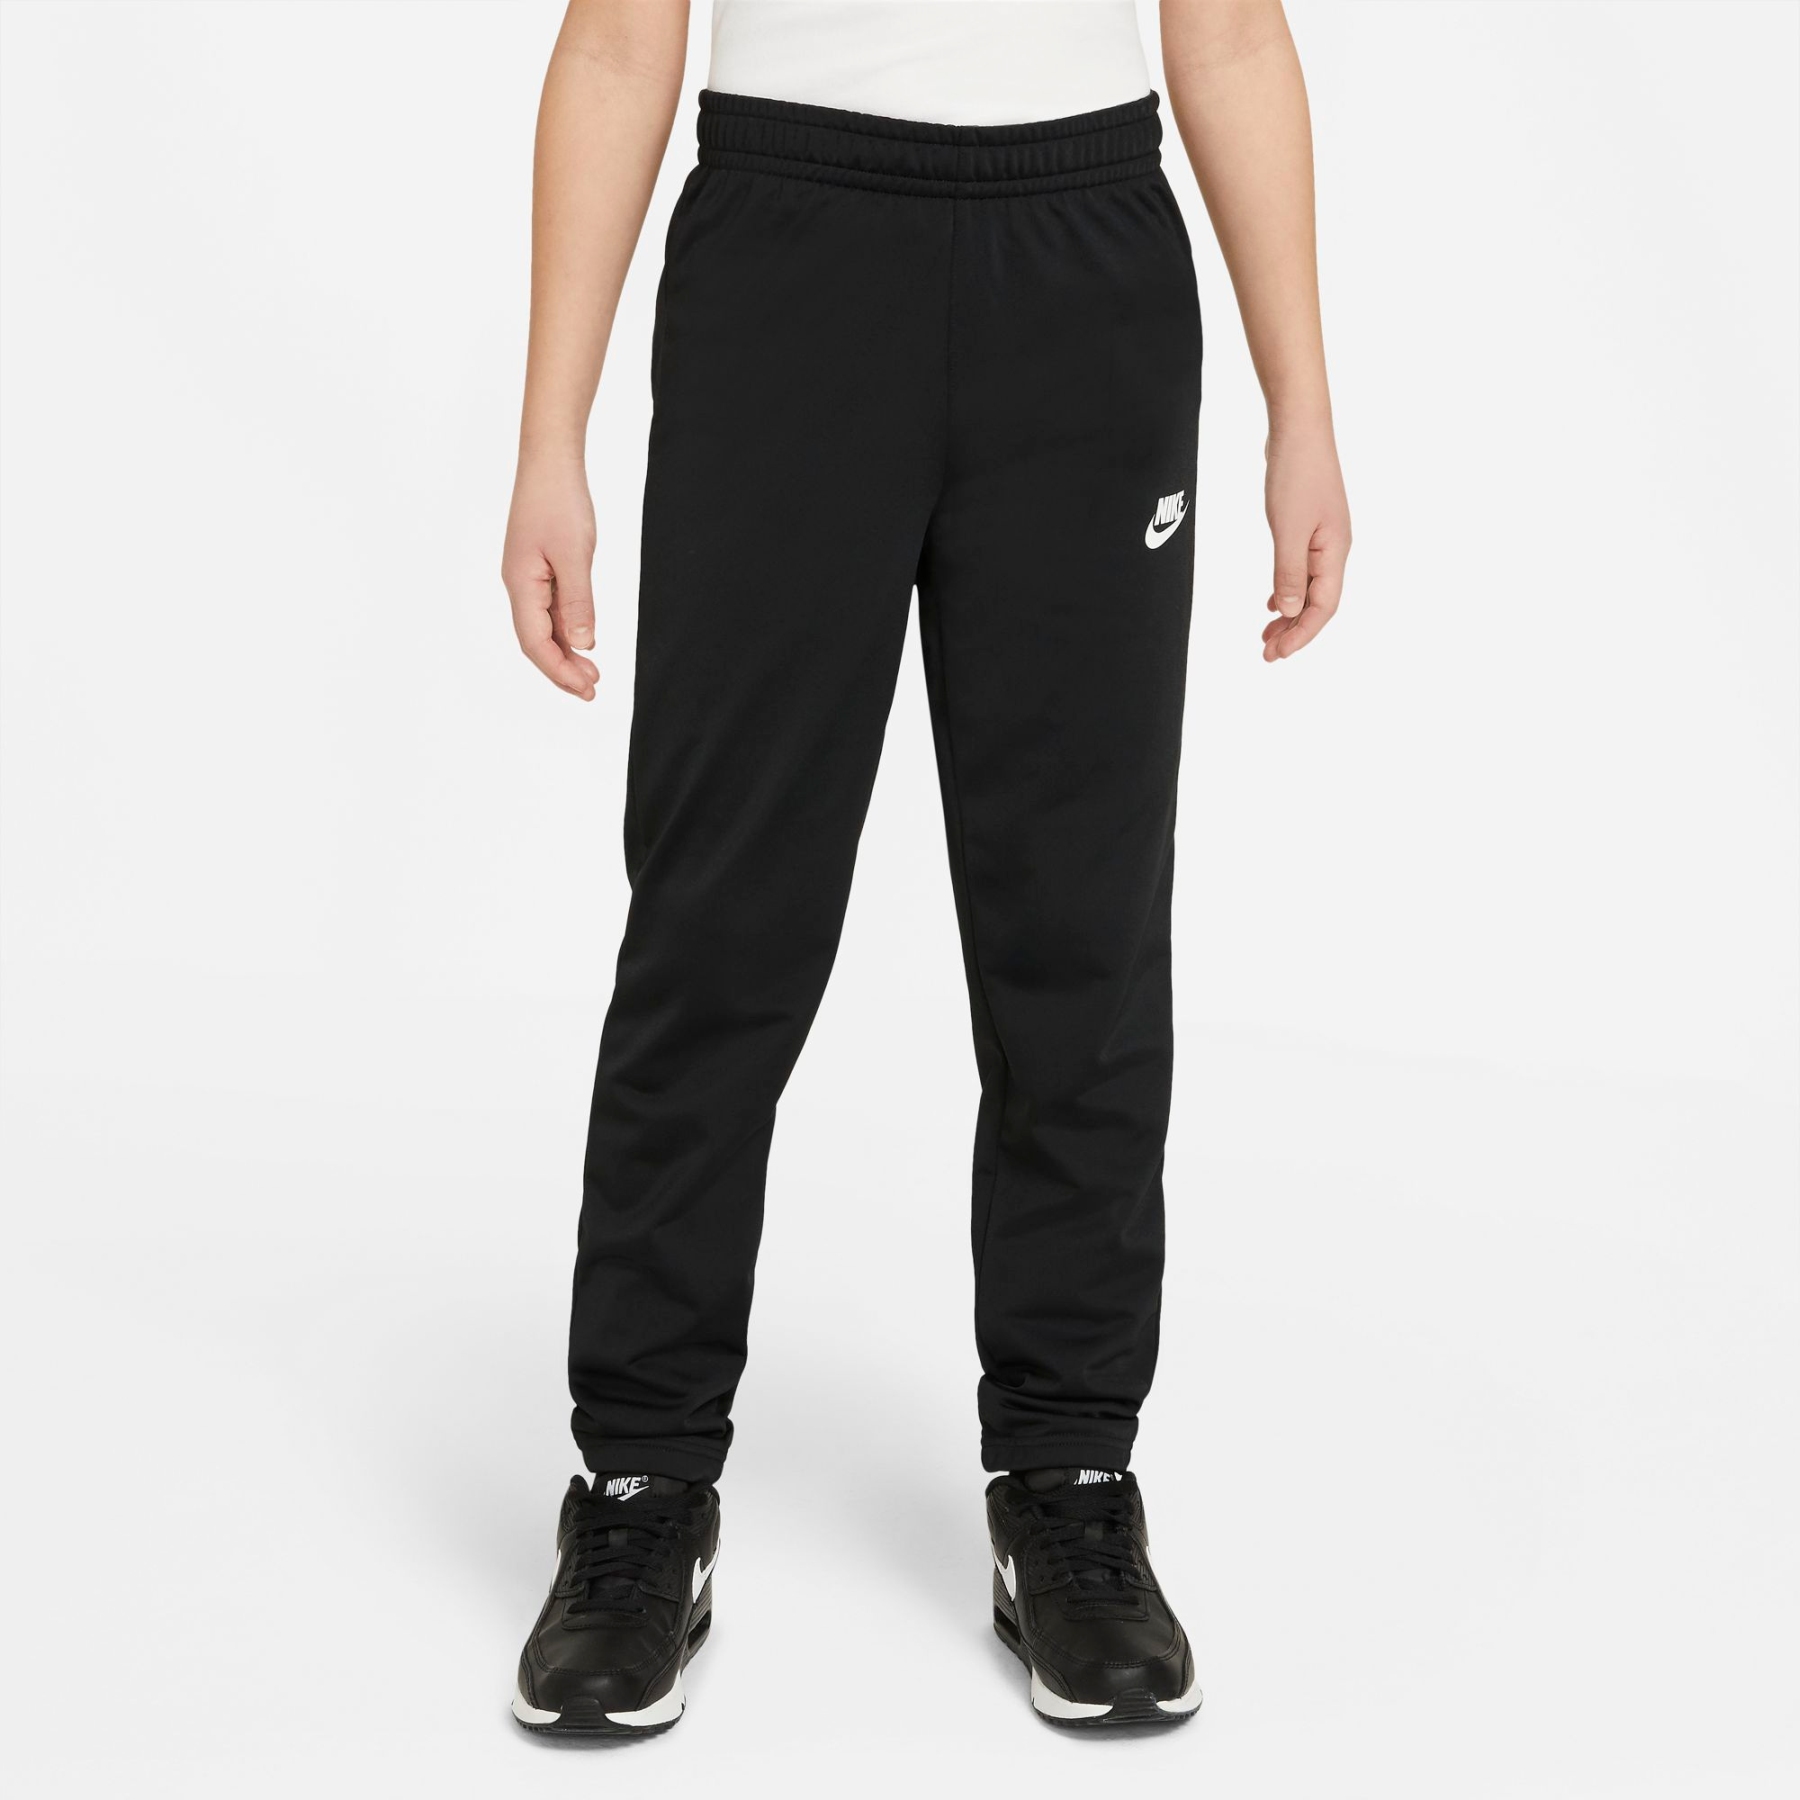 Nike Sportswear Trainingsanzug für schwarz/schwarz/weiss Kinder - schwarz/ ältere DH9661-010